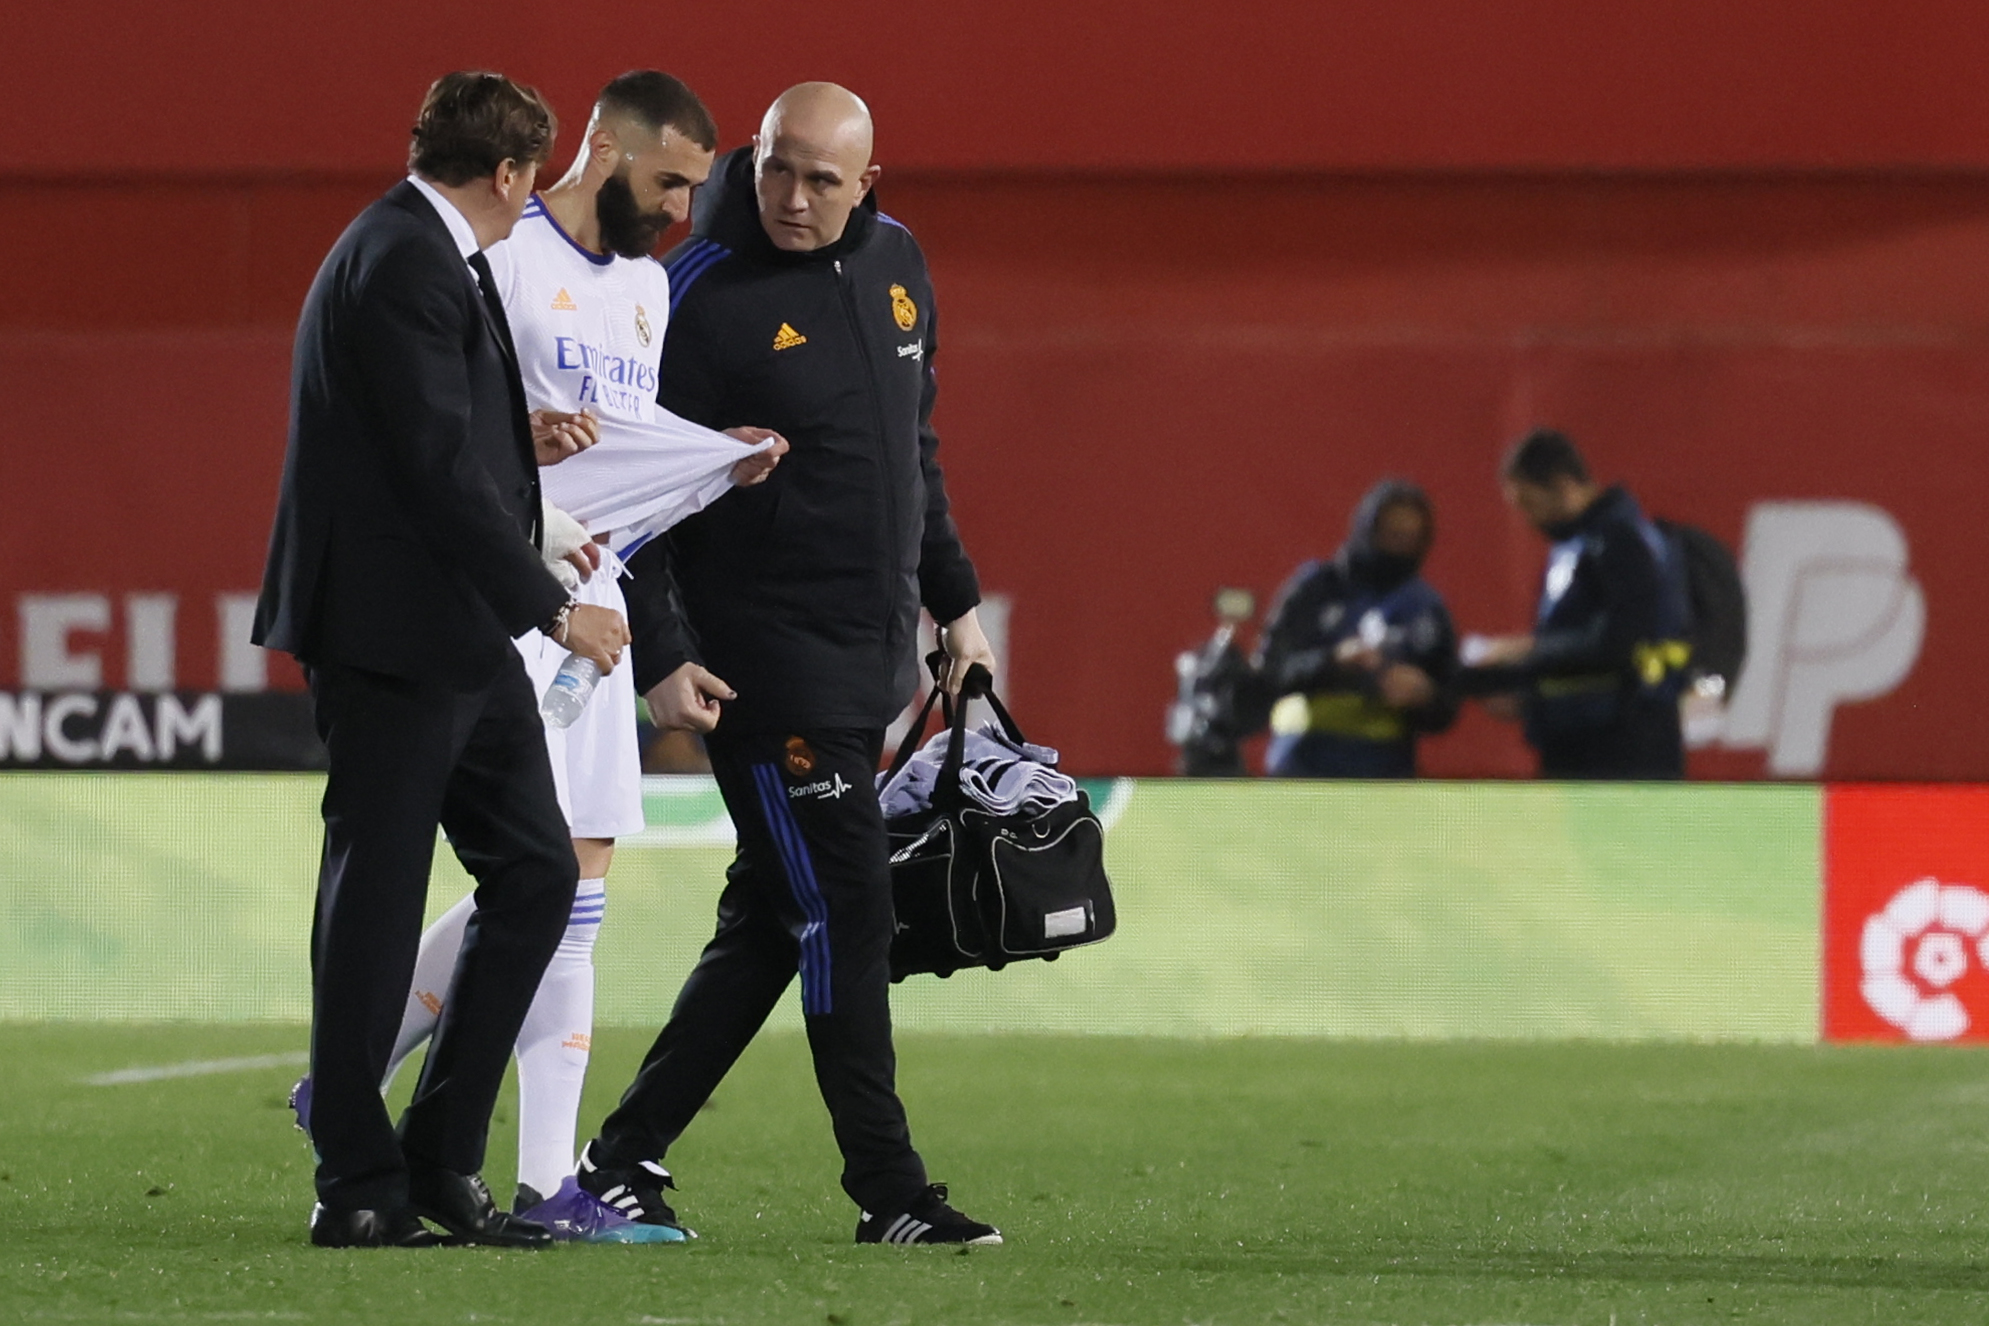 El delantero francés del Real Madrid, Karim Benzema, abandonó el terreno de juego tras caer lesionado durante el encuentro de LaLiga ante el Mallorca en el Visit Mallorca Estadi de la capital balear el 14 de marzo. Foto Prensa Libre: EFE.